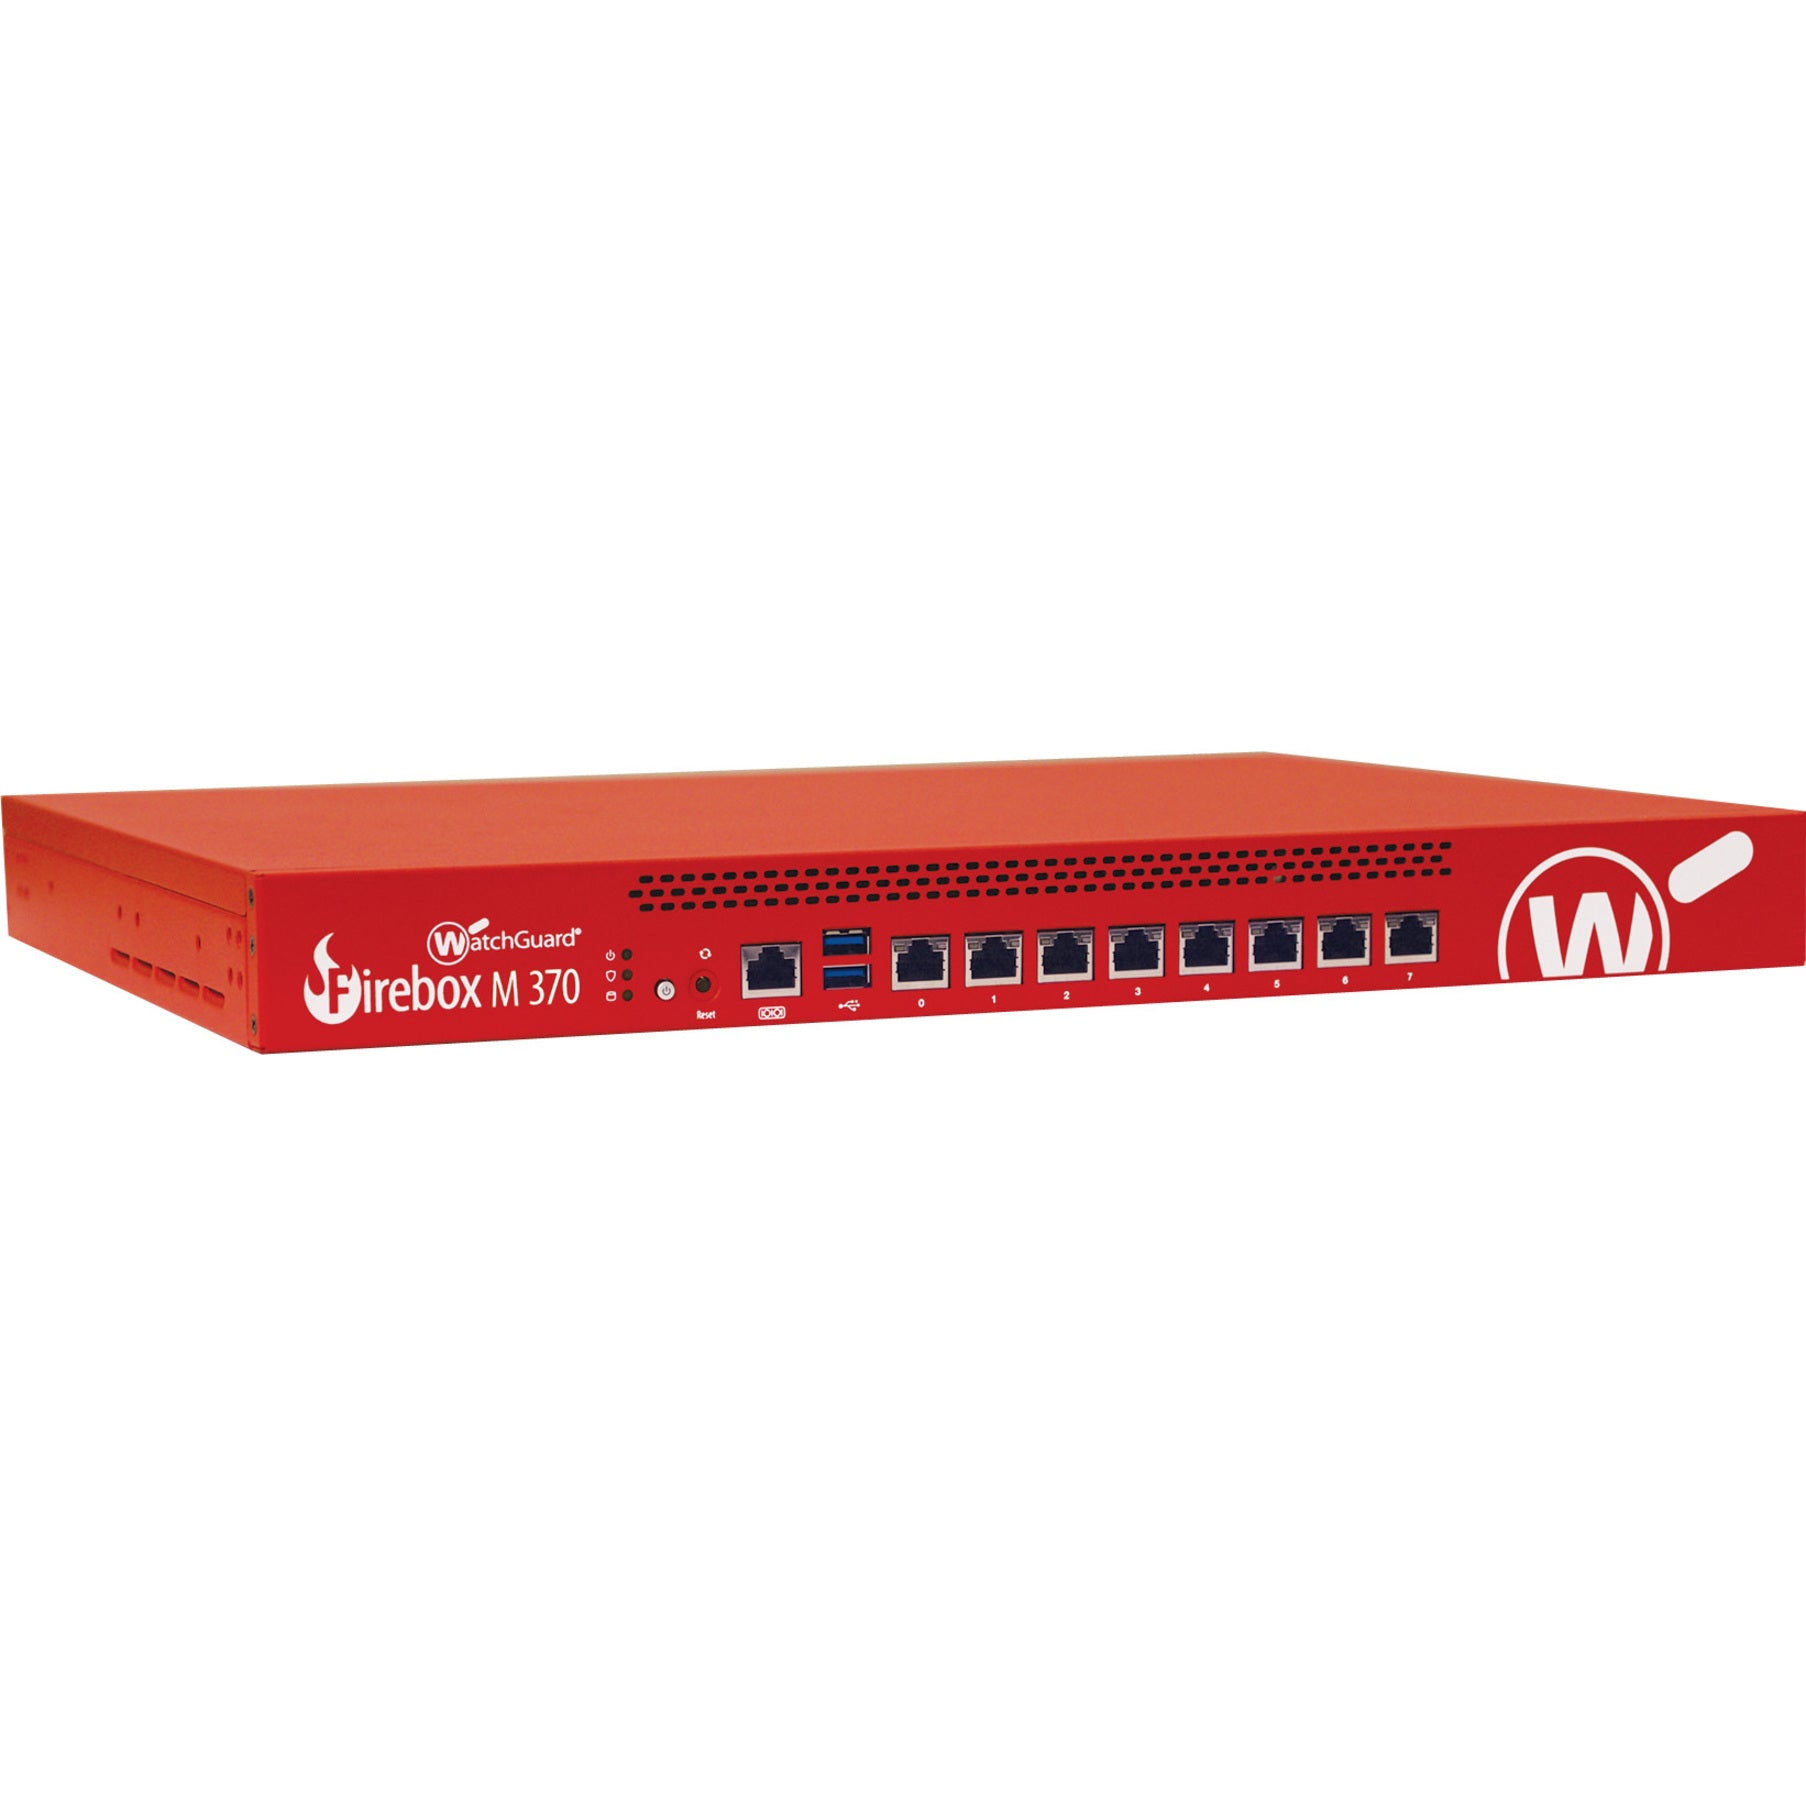 WatchGuard Firebox M370 Network Security/Firewall Appliance [Discontinued]